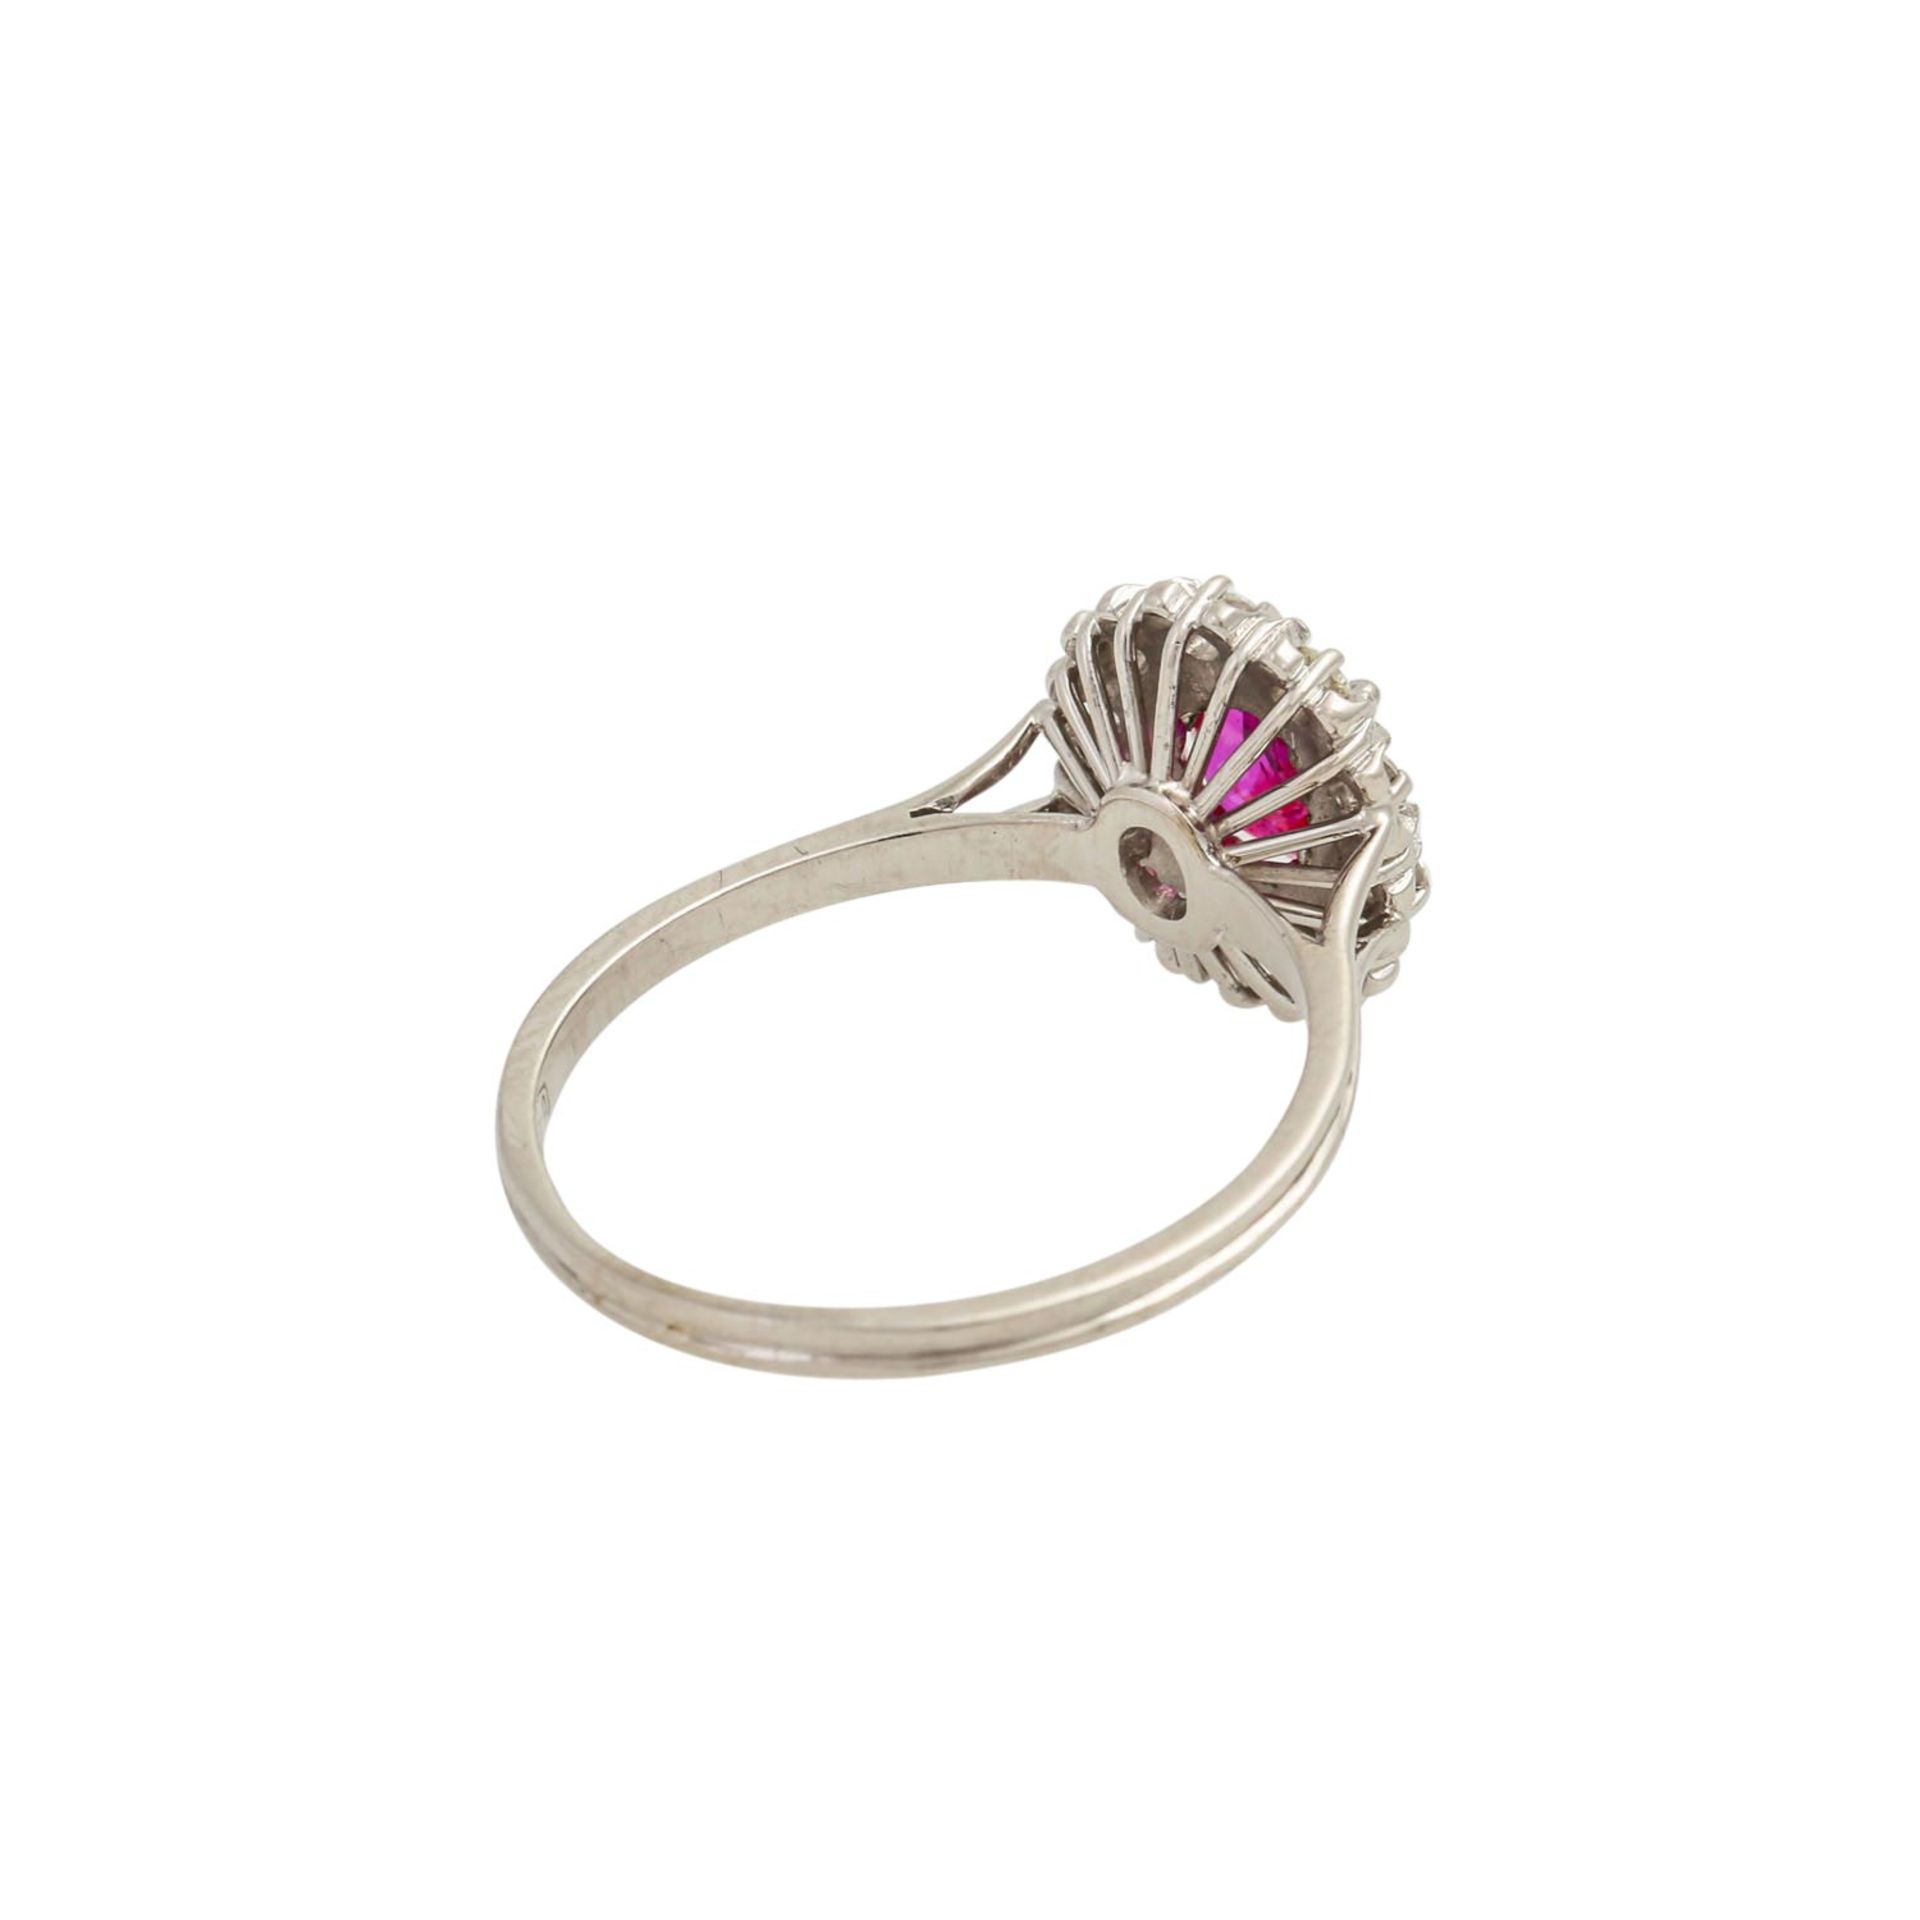 Ring mit Rubin und Brillanten von zus. ca. 0,10 ct, gute Farbe u. Reinheit, Rubin ca. - Bild 3 aus 5